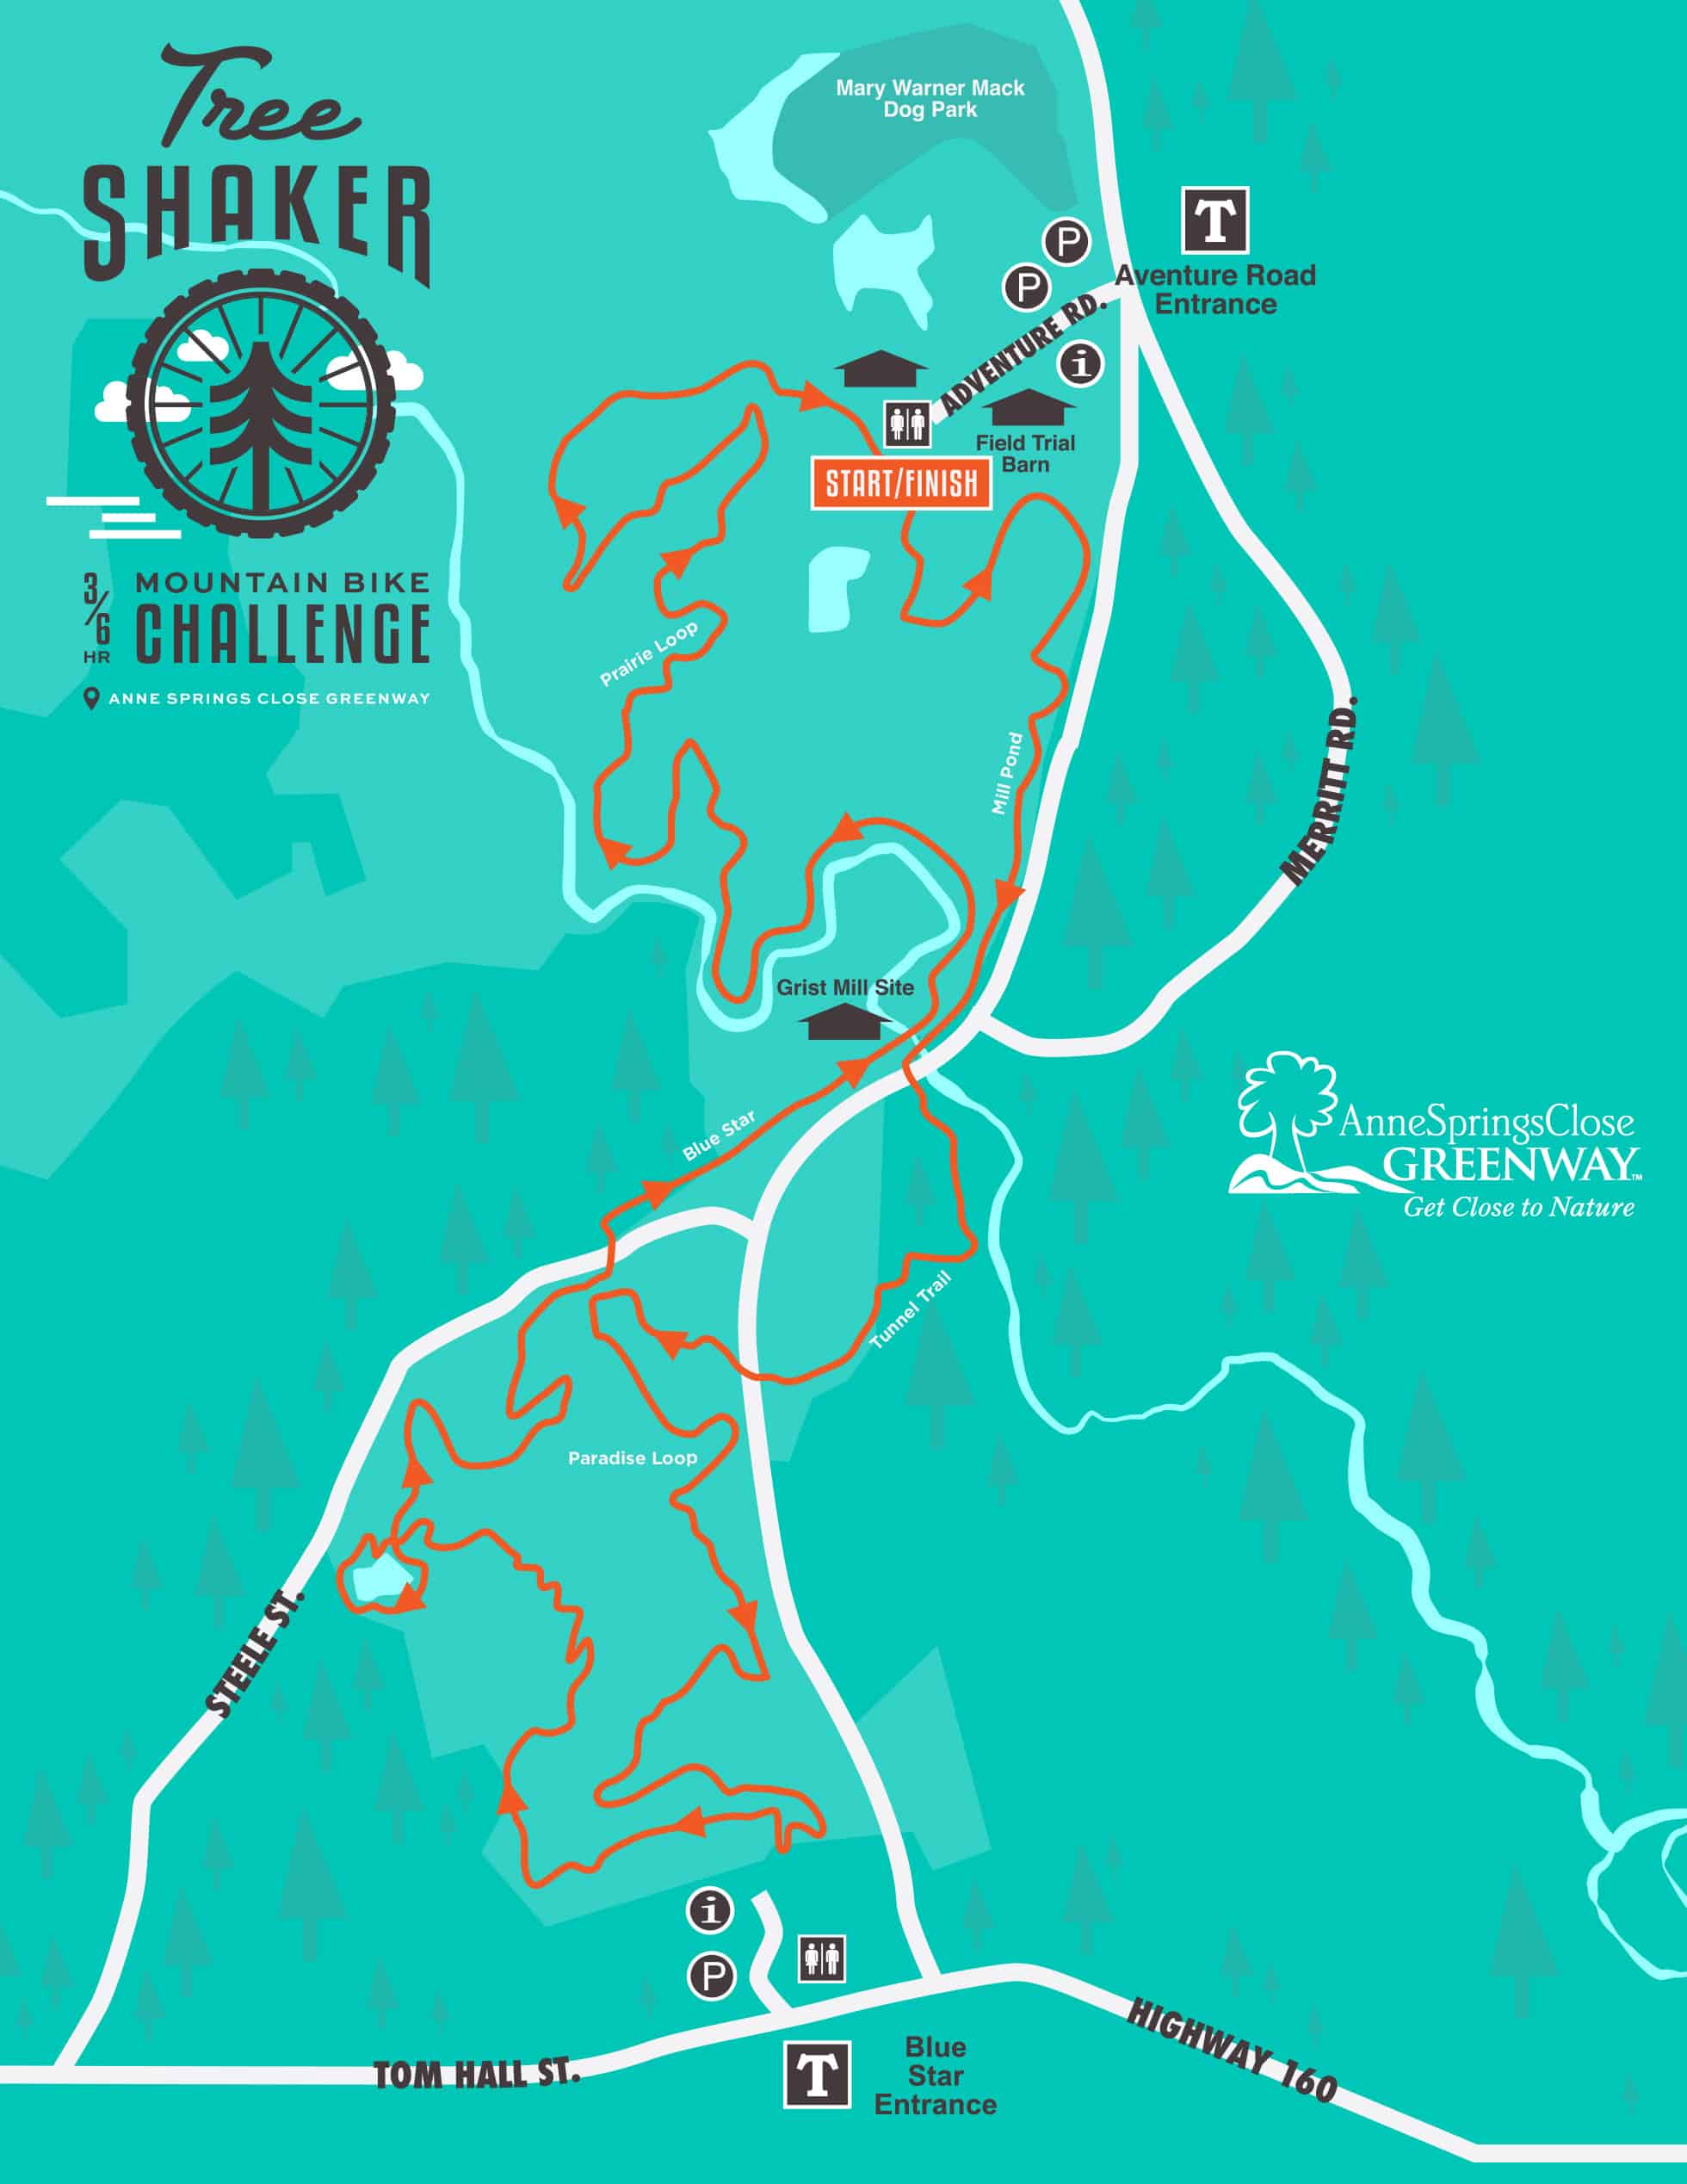 2022 TreeShaker Mountain Bike Challenge Course Map